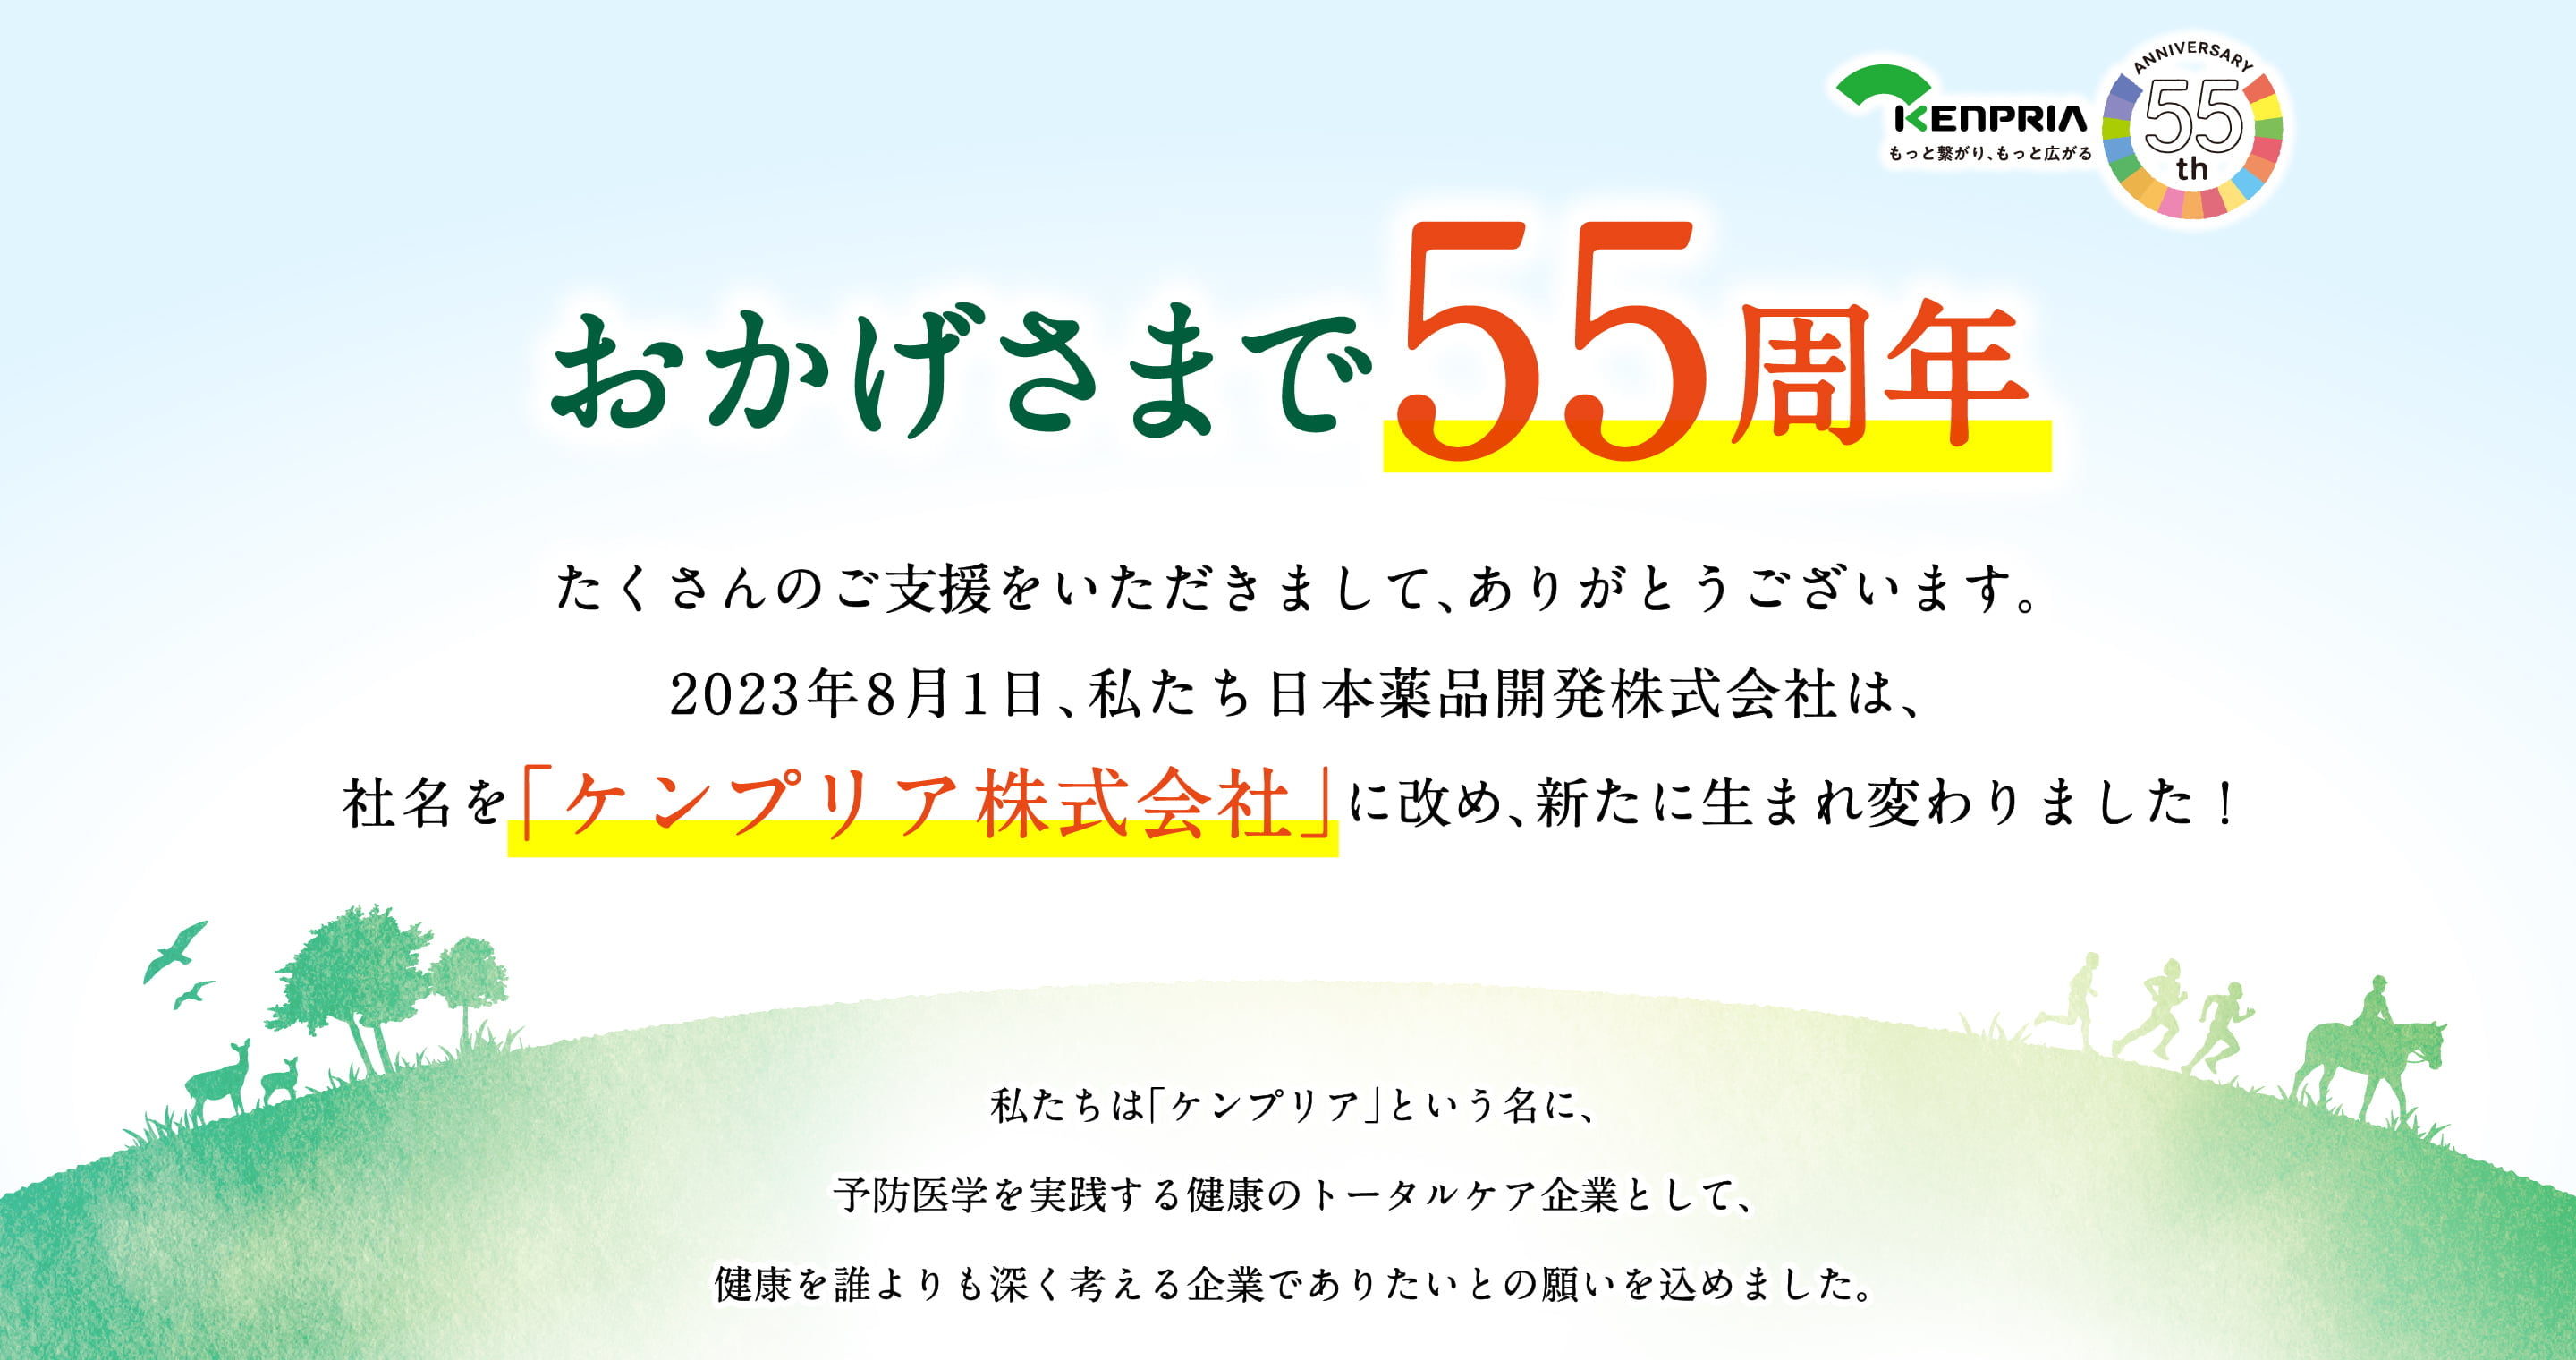 おかげさまで55周年。たくさんのご支援をいただきまして、ありがとうございます。2023年8月1日、私達日本薬品開発株式会社は社名を「ケンプリア株式会社」に改、新たに生まれ変わりました！